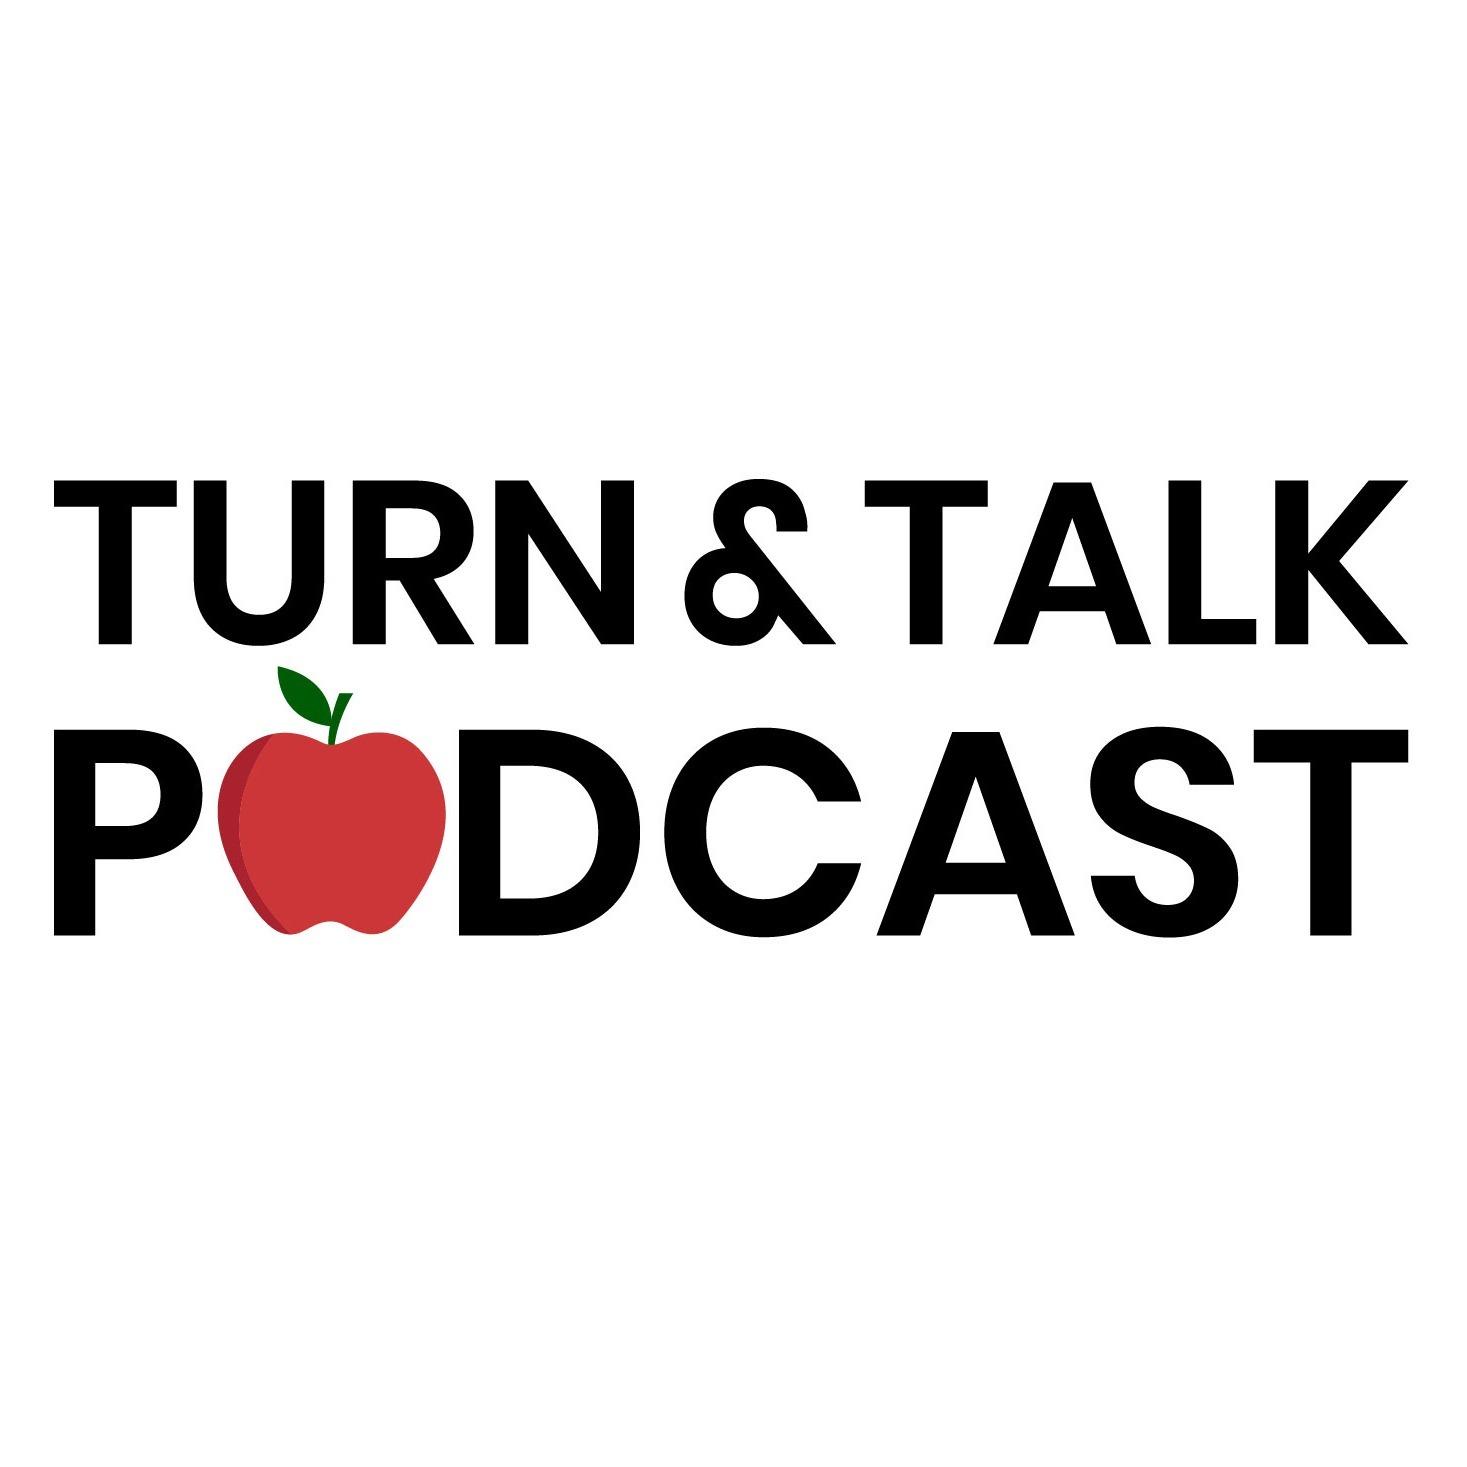 Turn & Talk Podcast Where Teachers Turn and Talk